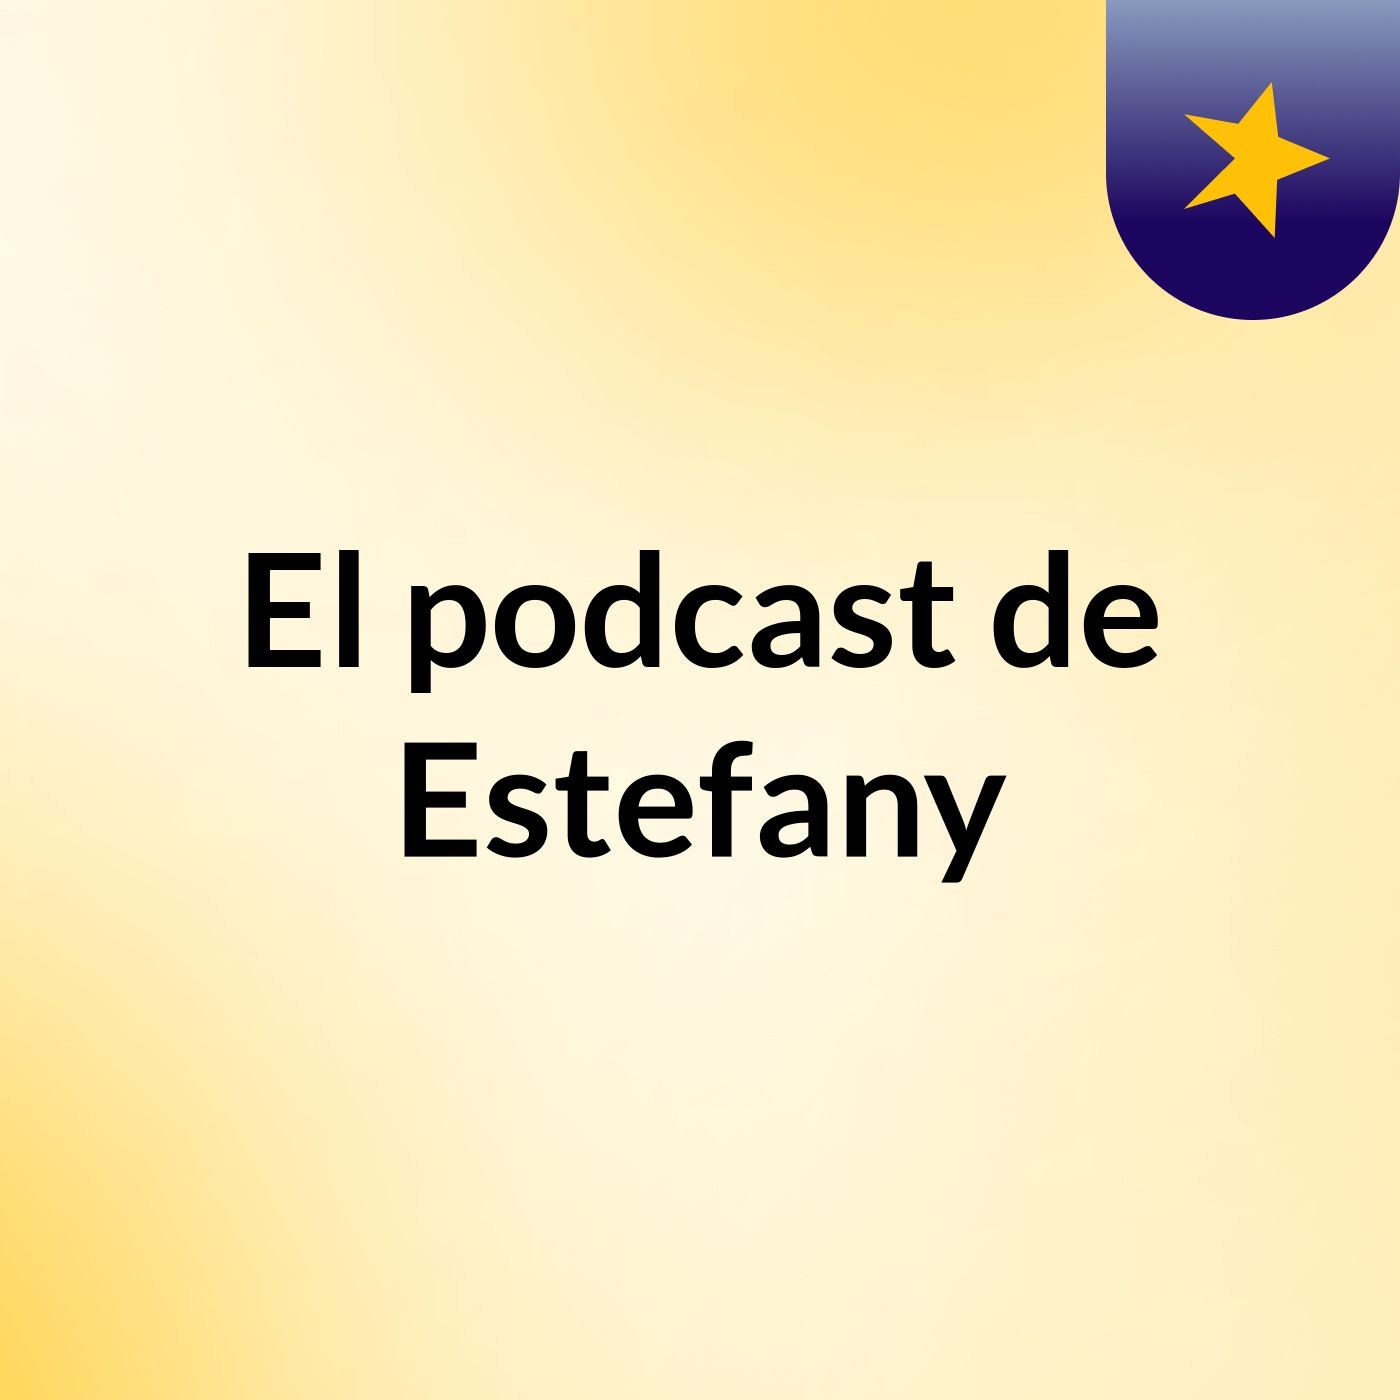 El podcast de Estefany